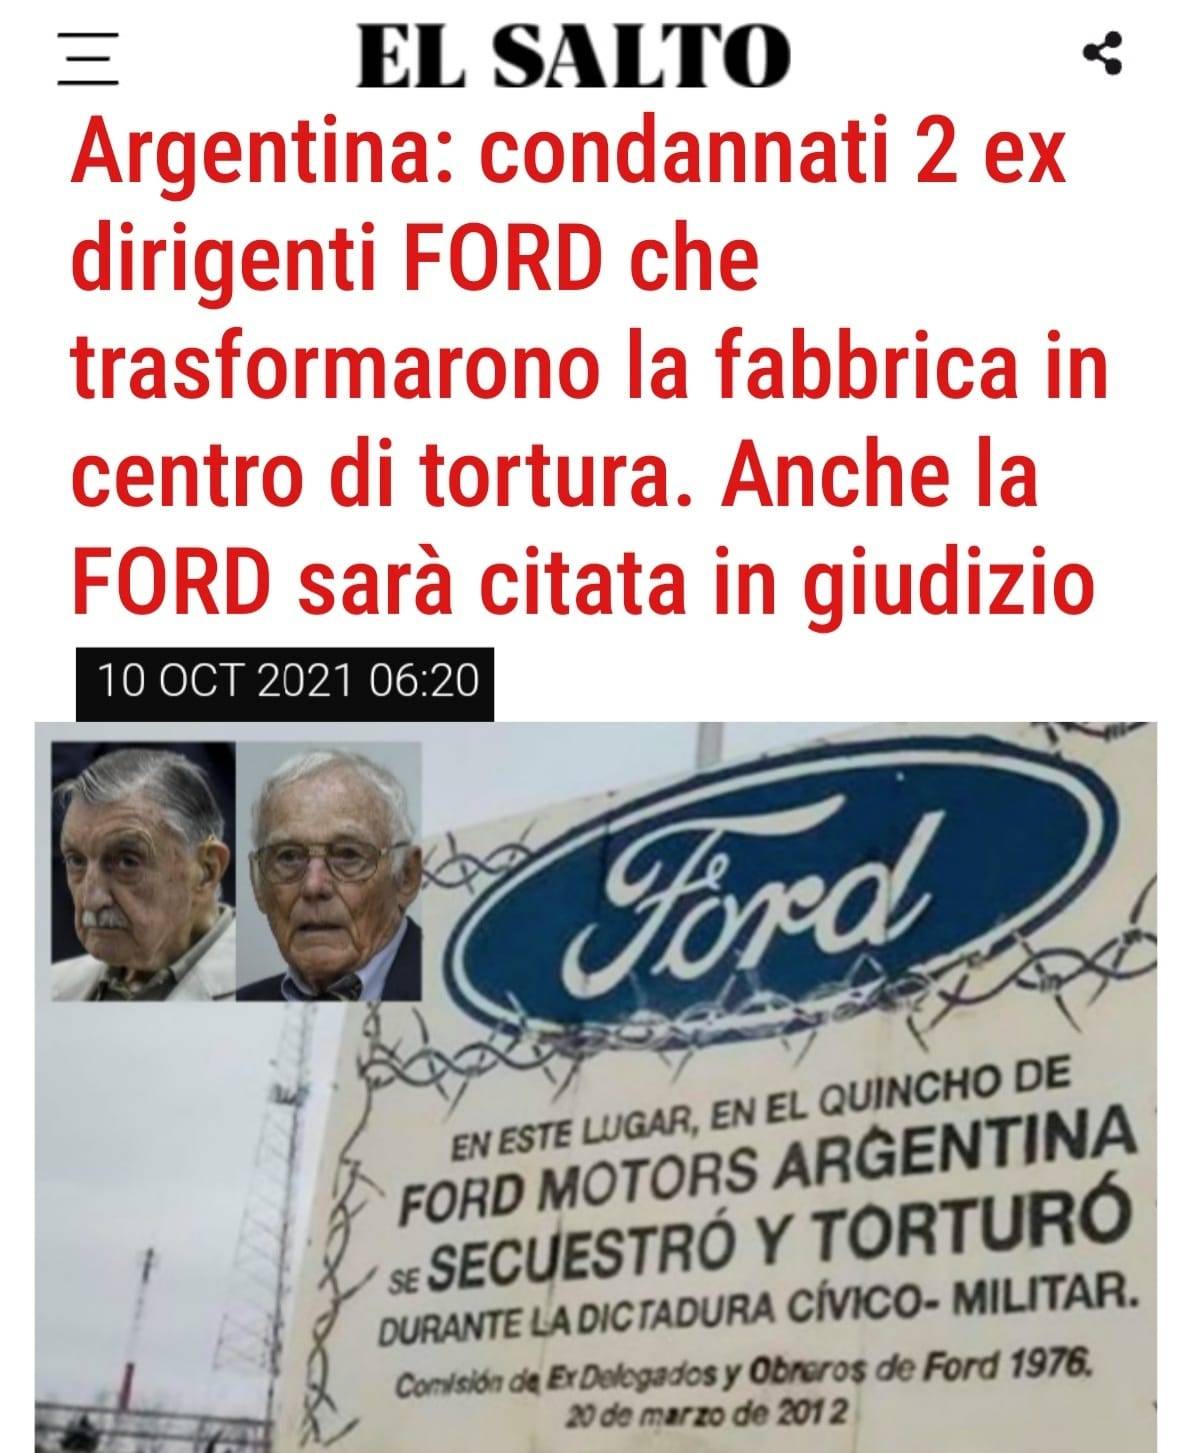 La Camera Federale argentina ha confermato le condanne di due ex dirigenti della multinazionale automobilistica Ford per il rapimento e la tortura di 24 lavoratori durante l'ultima dittatura sostenuta dagli Stati Uniti.
I condannati, in collusione...